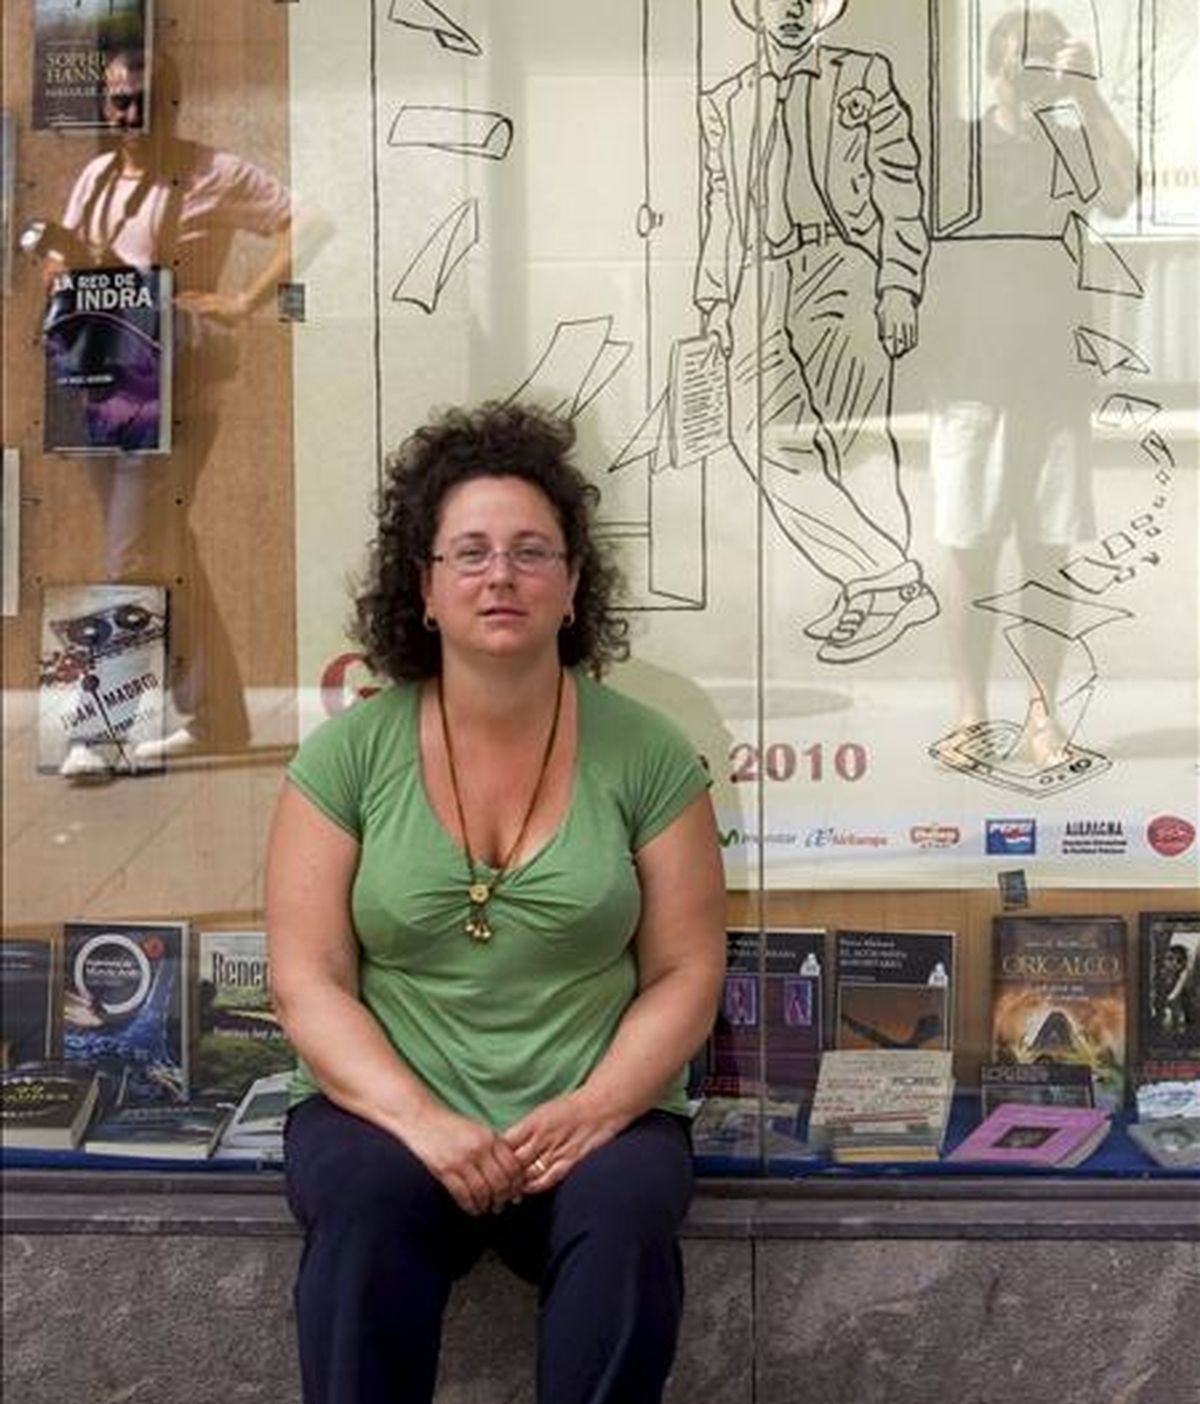 La escritora británica Sophie Hannah posa para los medios hoy en Gijón donde ha presentado su novela "Matar de amor", en el marco de la Semana Negra de Gijón. EFE